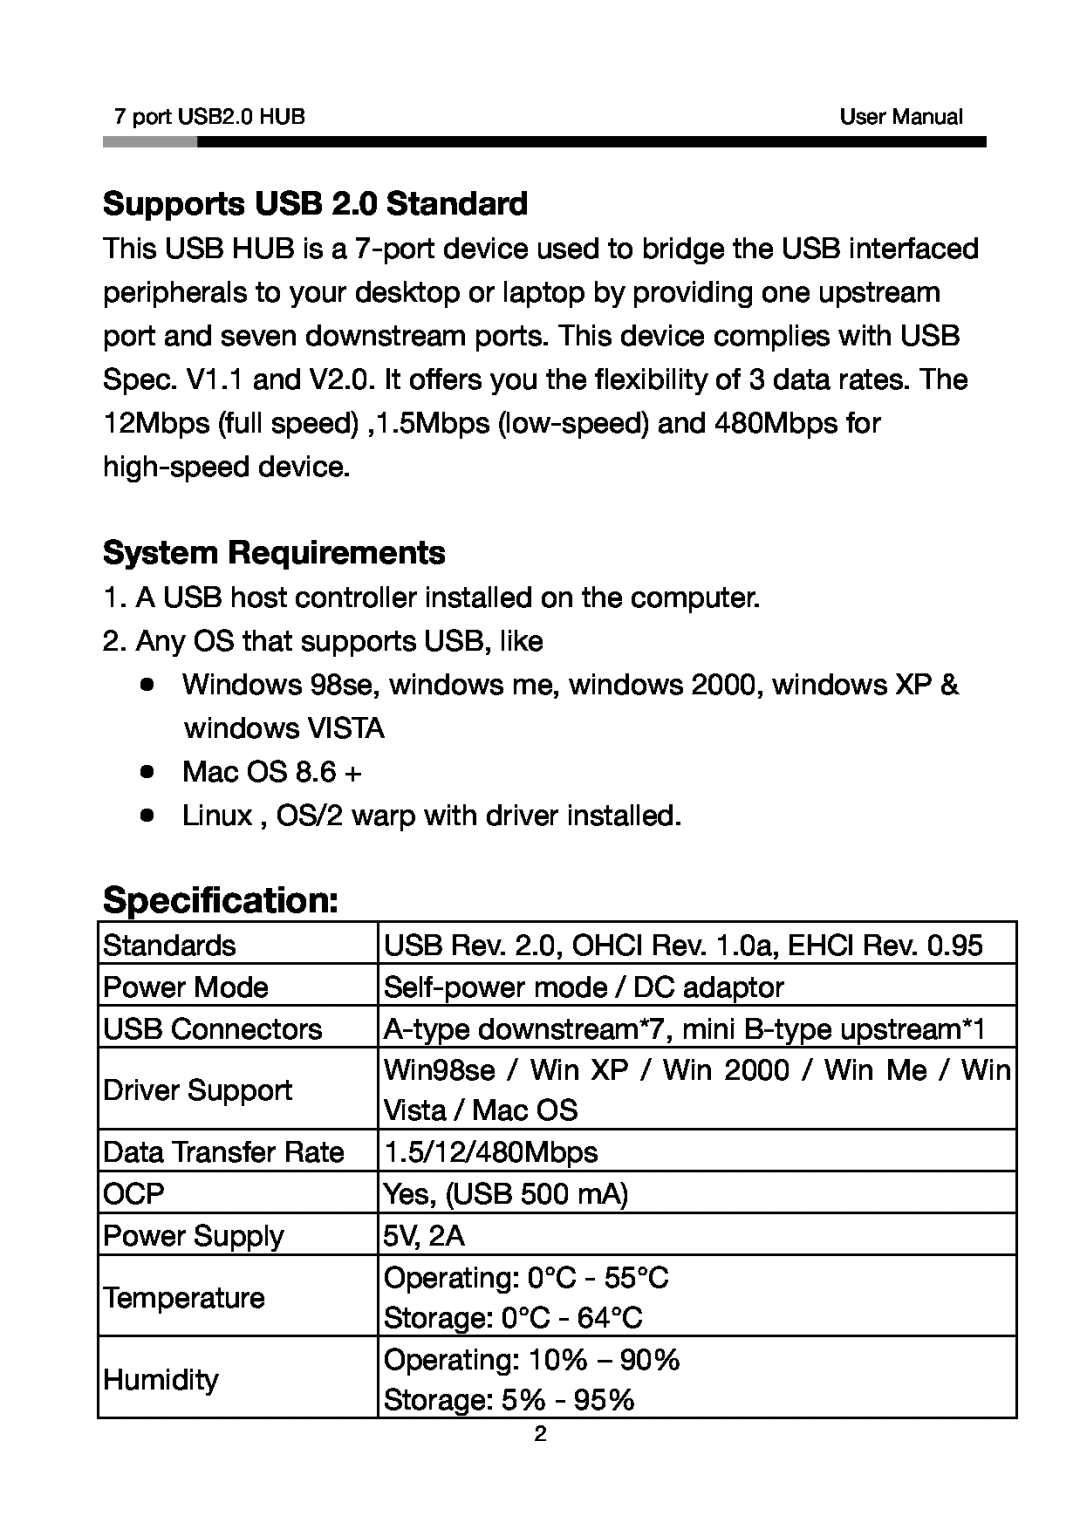 Rosewill RHUB-310S, RHUB-310B, RHUB310R, RHUB310W user manual Supports USB 2.0 Standard, System Requirements, Specification 